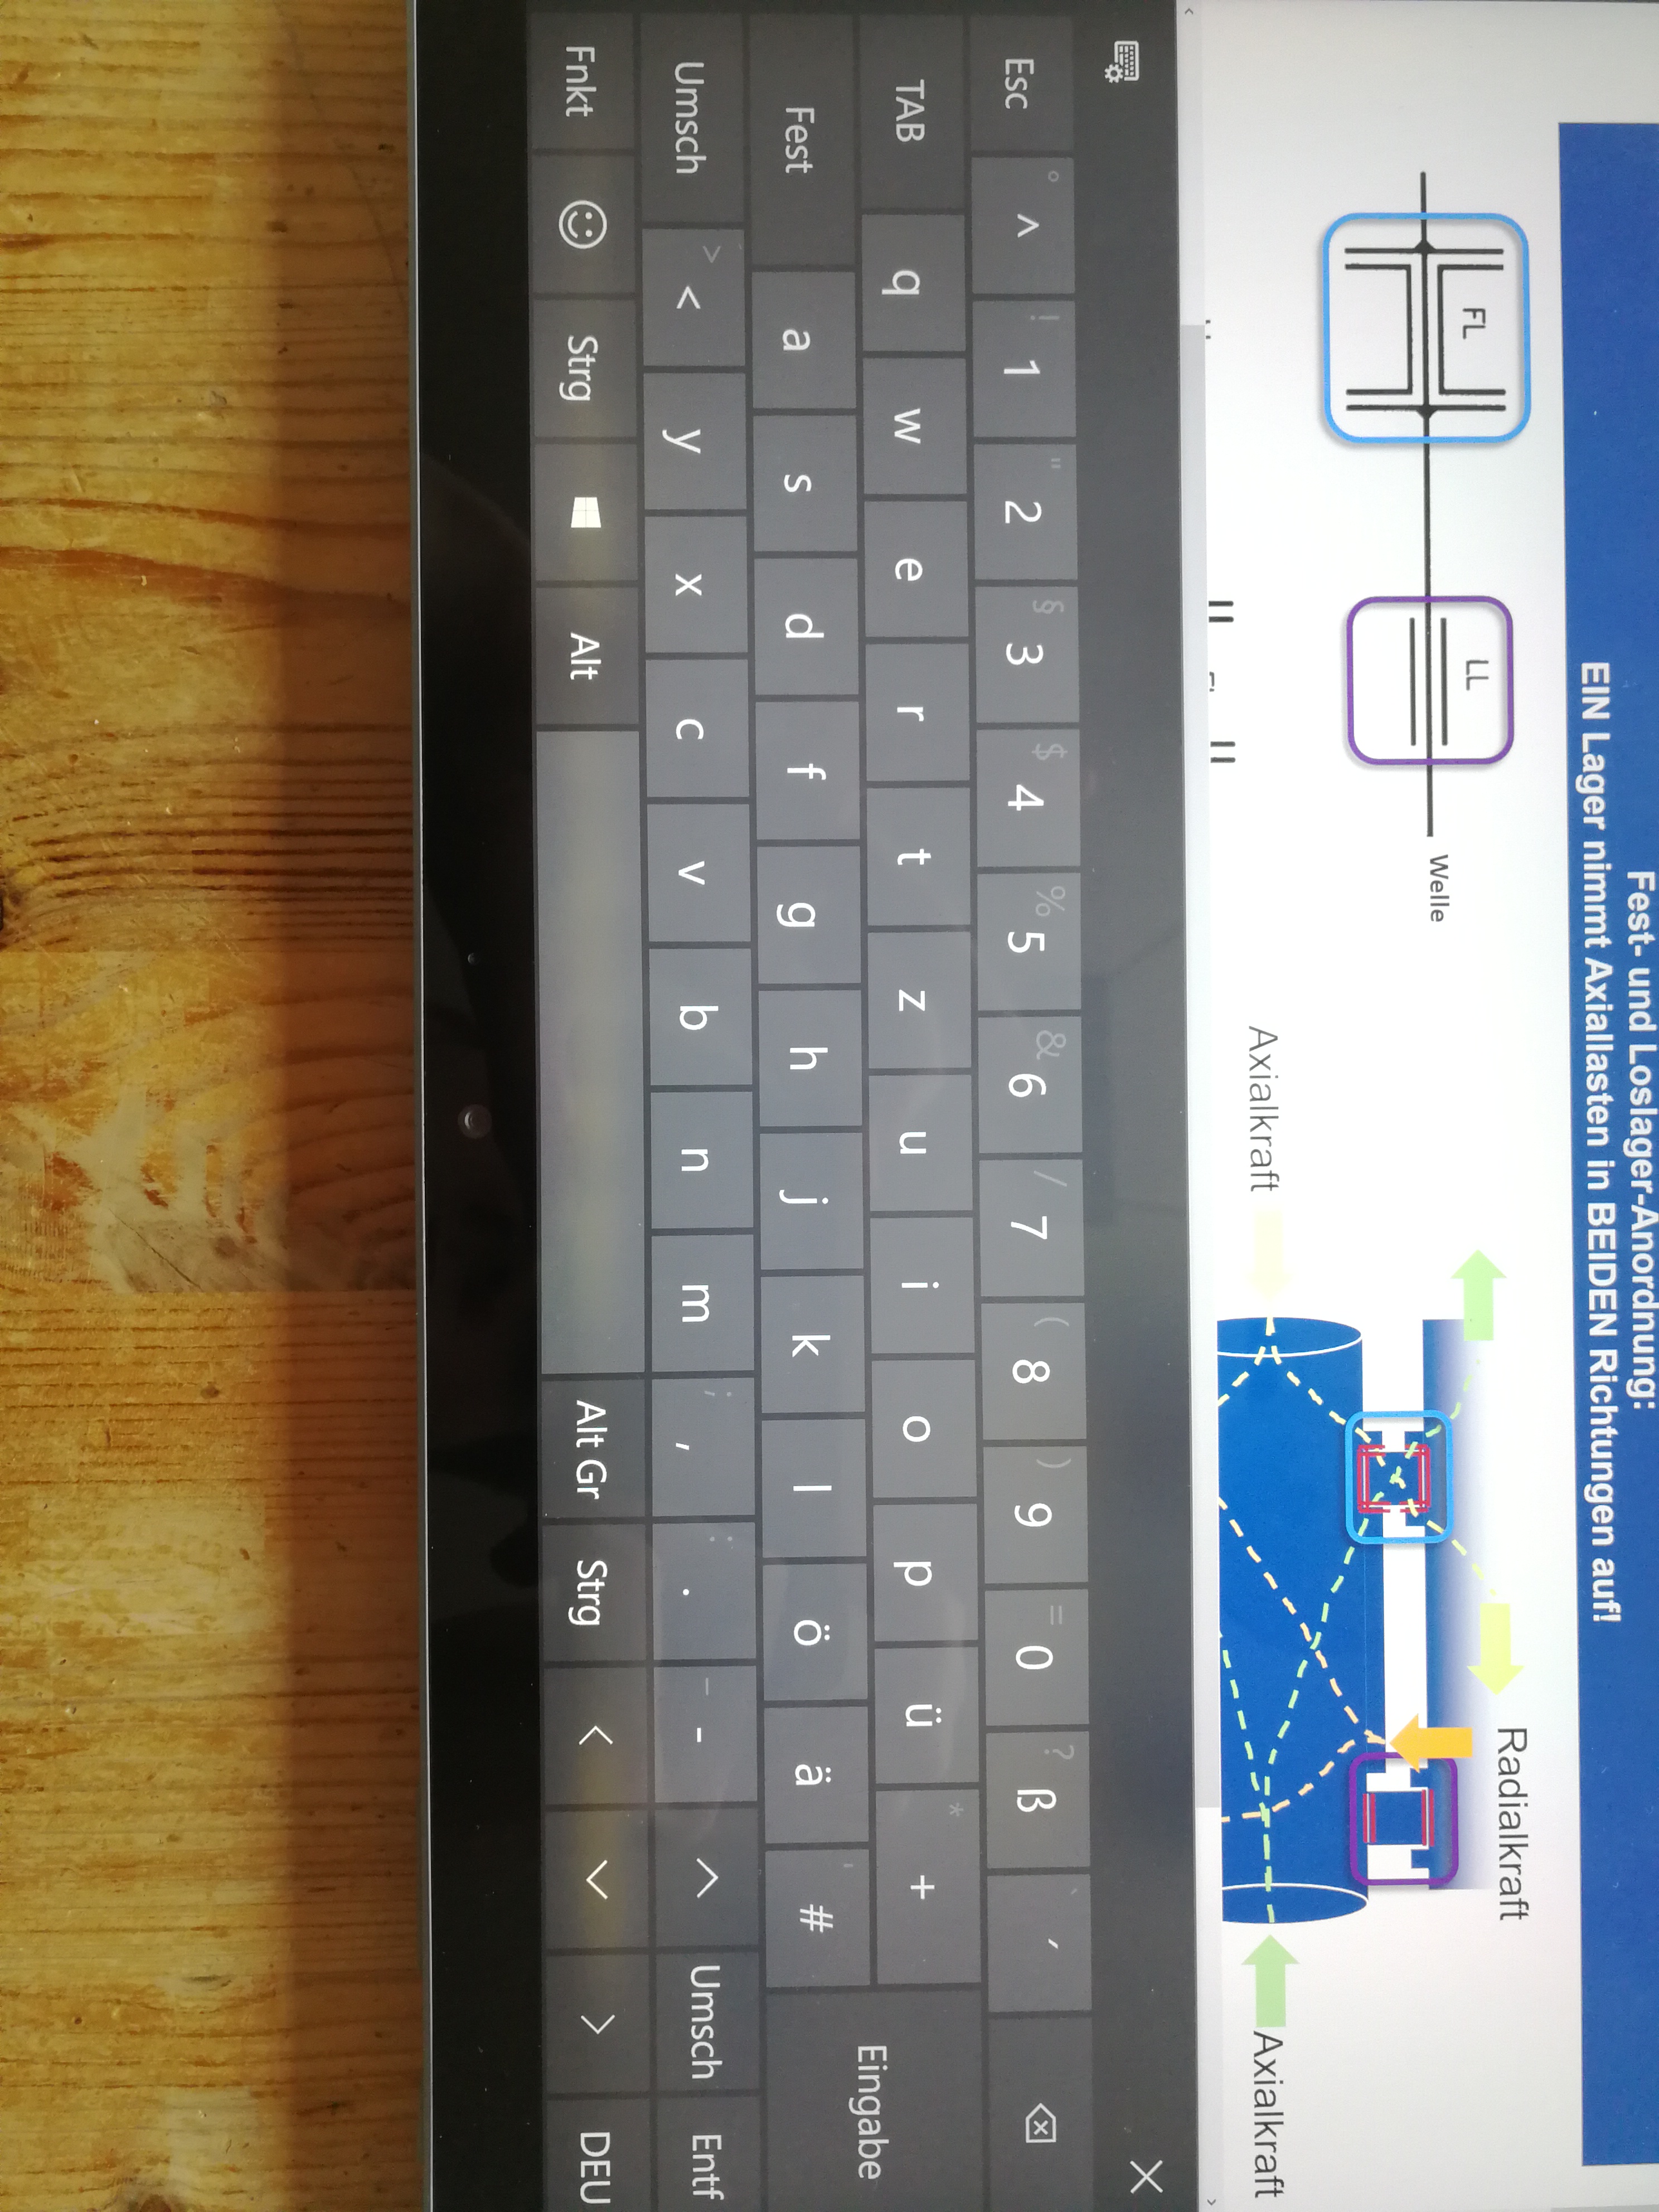 Wärmeentwickung beim Surface Book 2 mit folgenden Verfärbungen am Display